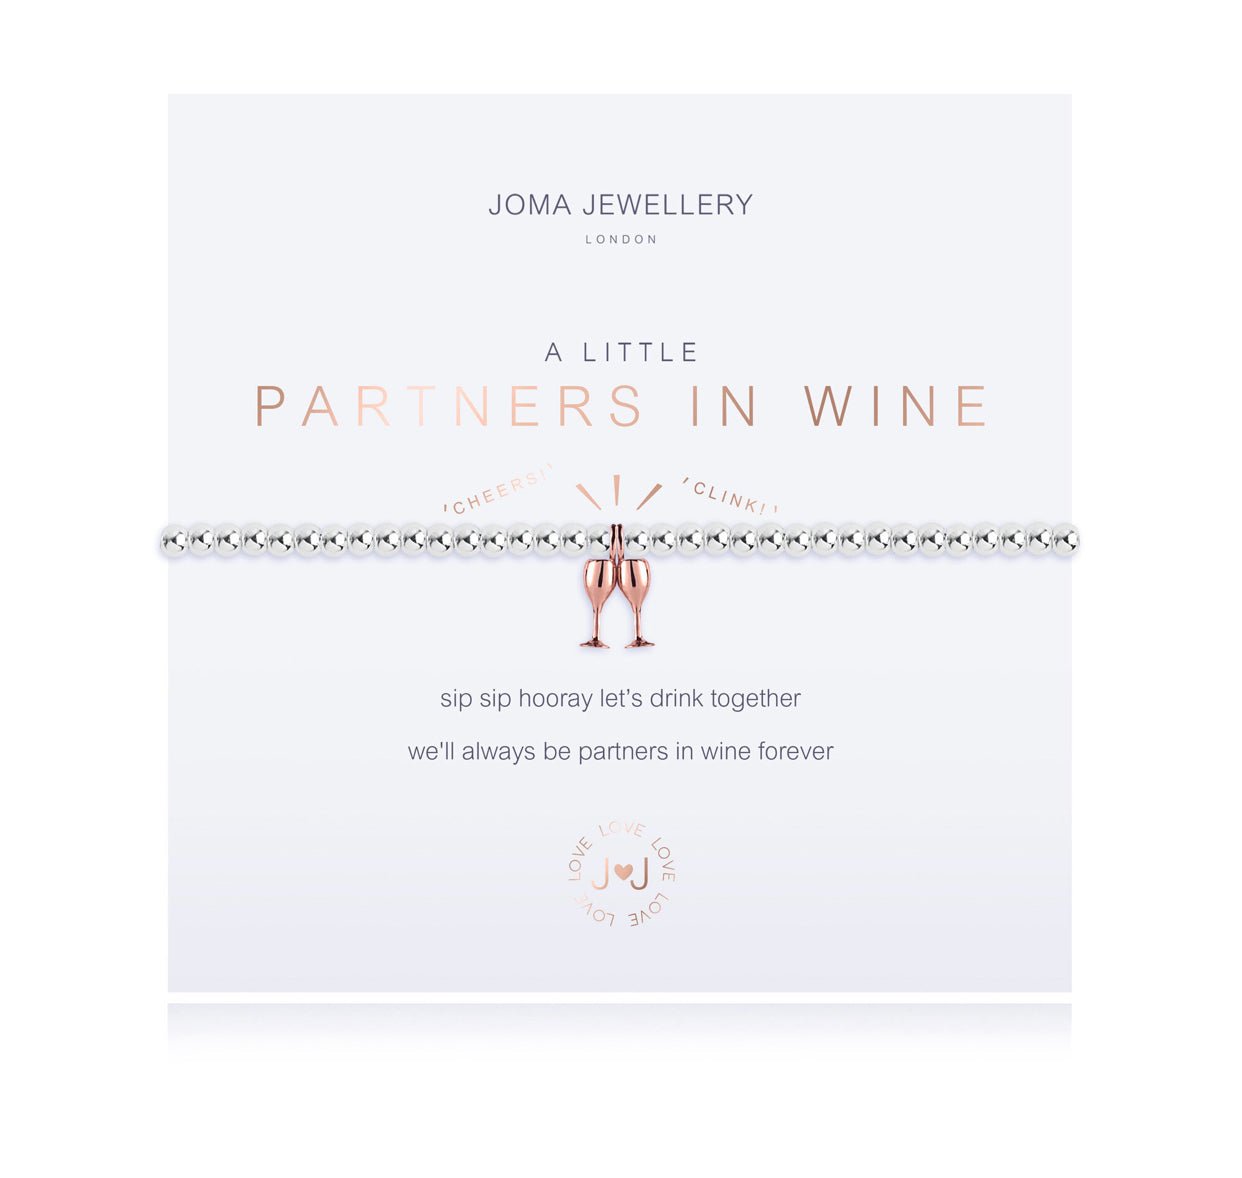 Joma Jewellery 'A Little' Partners In Wine